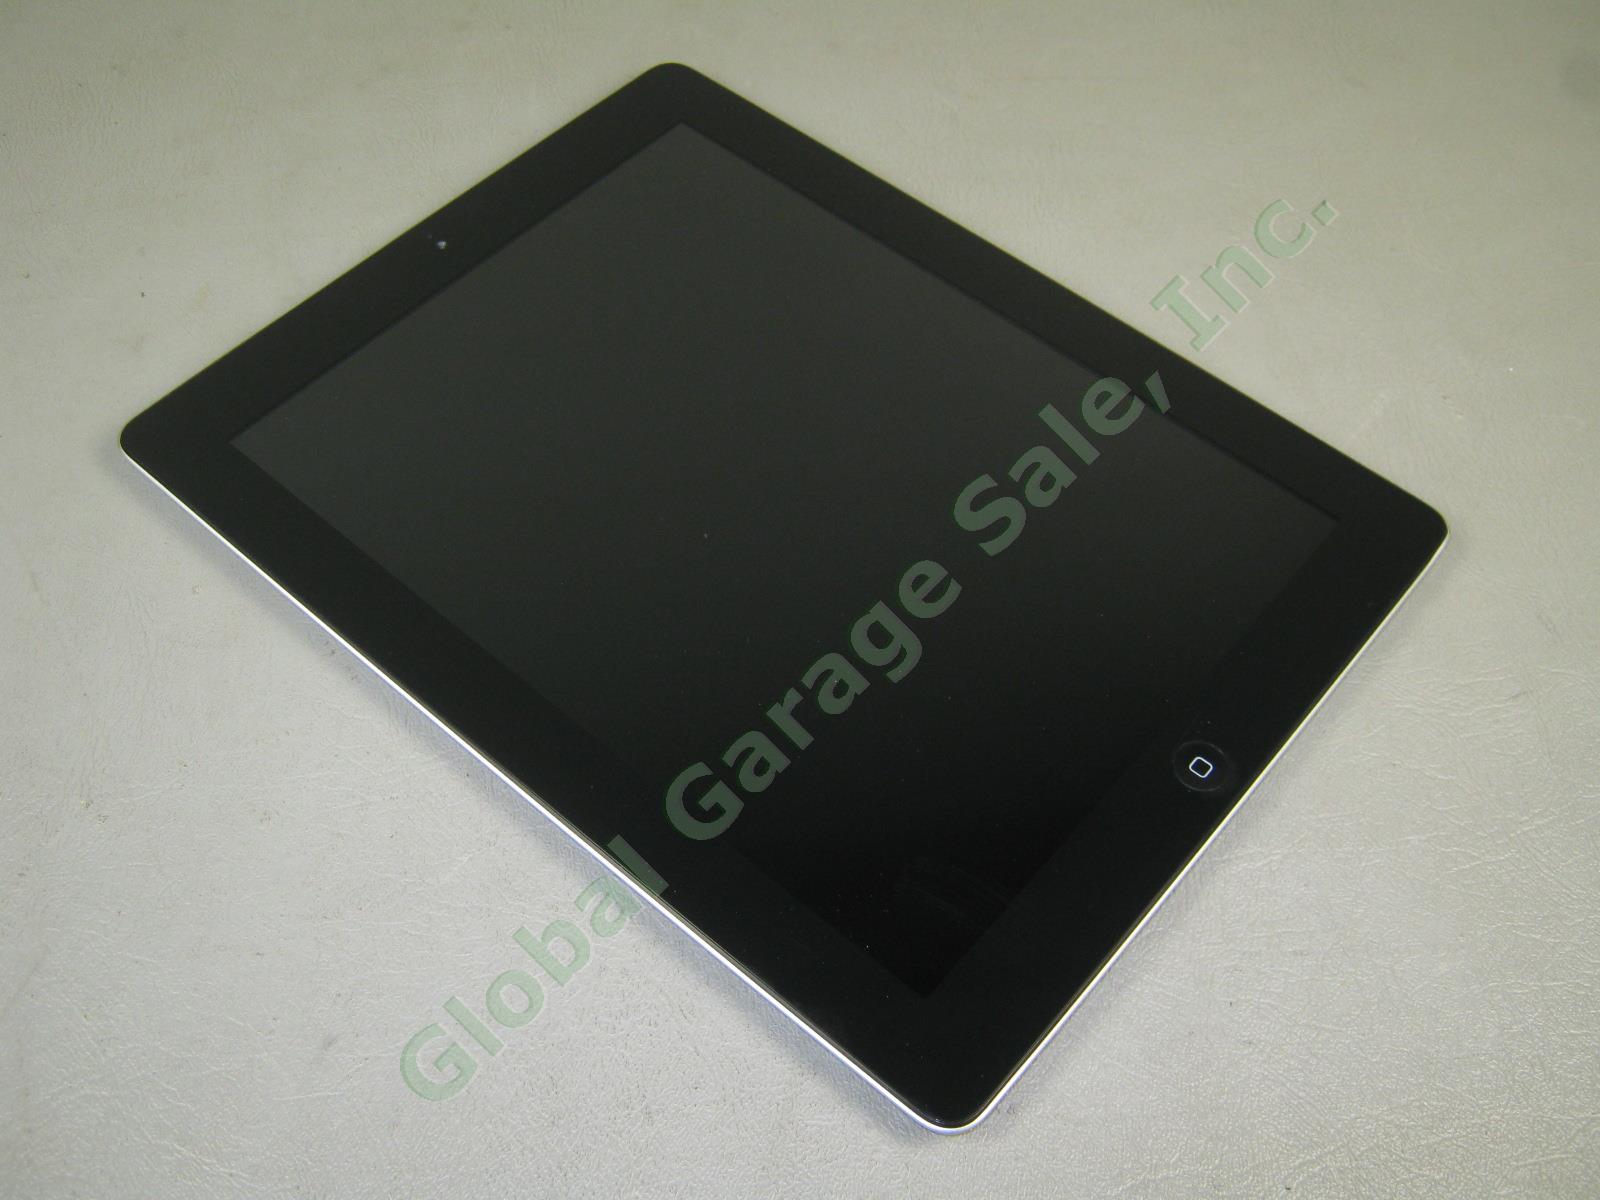 Apple iPad 2 Wifi 16GB Black Tablet Factory Reset MC770LL/A A1395 No Reserve! 4